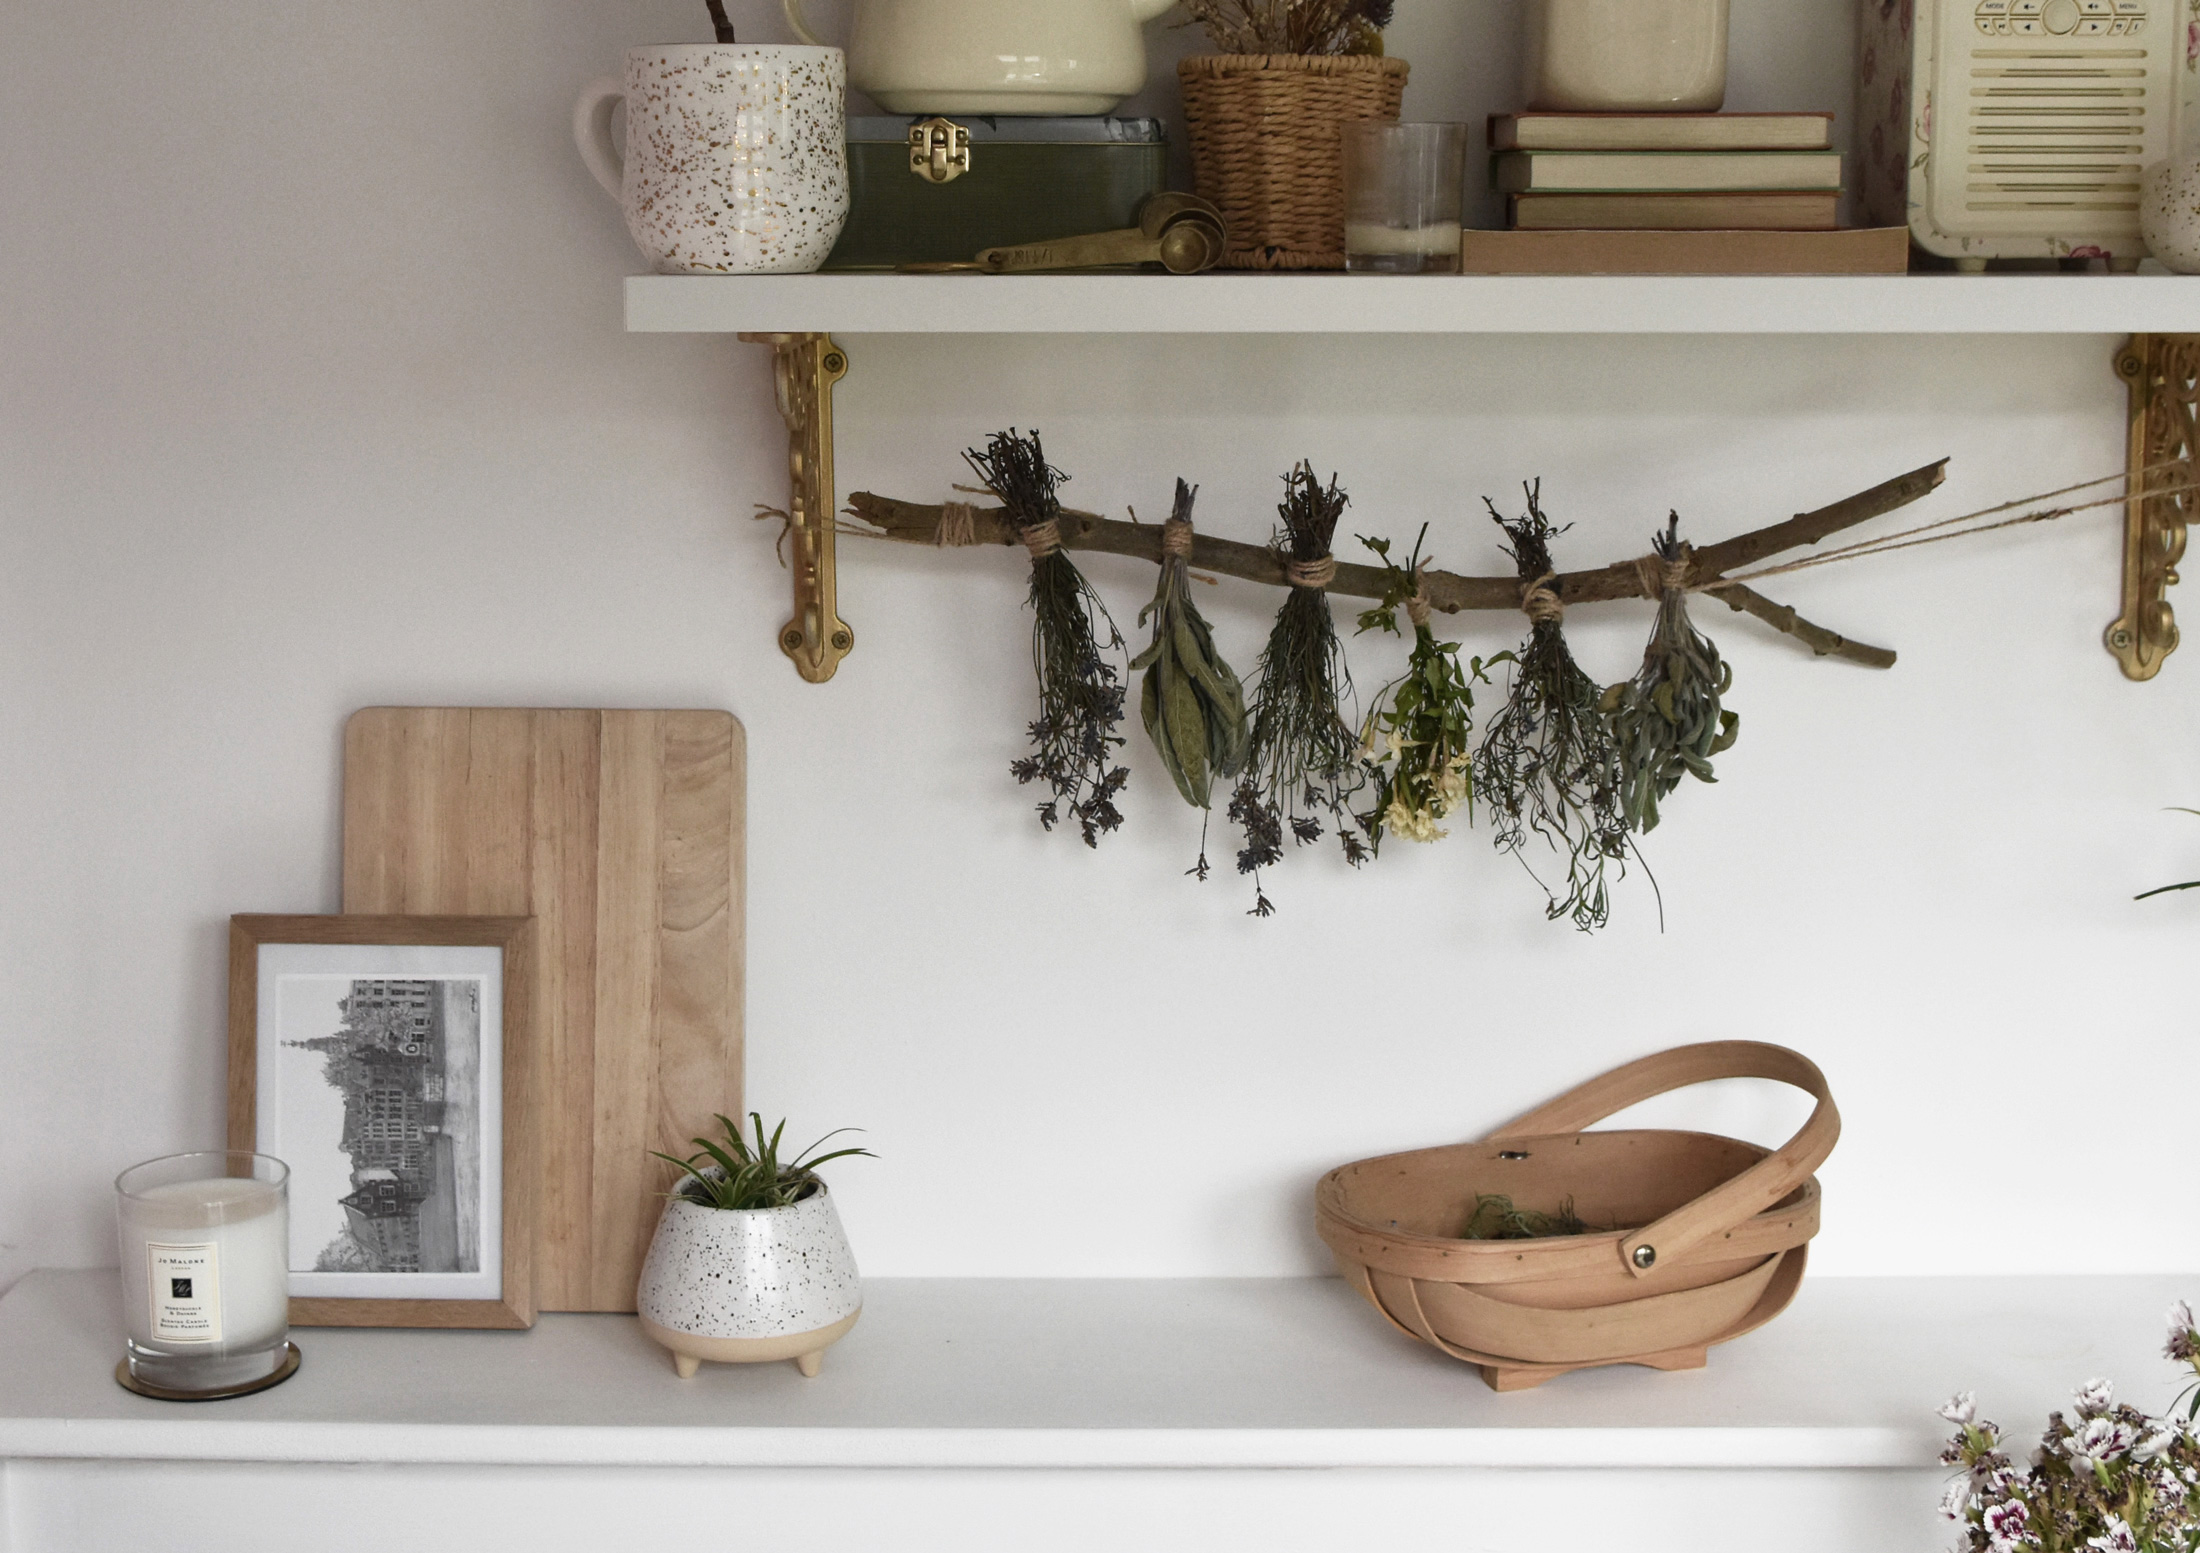 DIY Herb and Flower Drying Rack • Hollie Berries